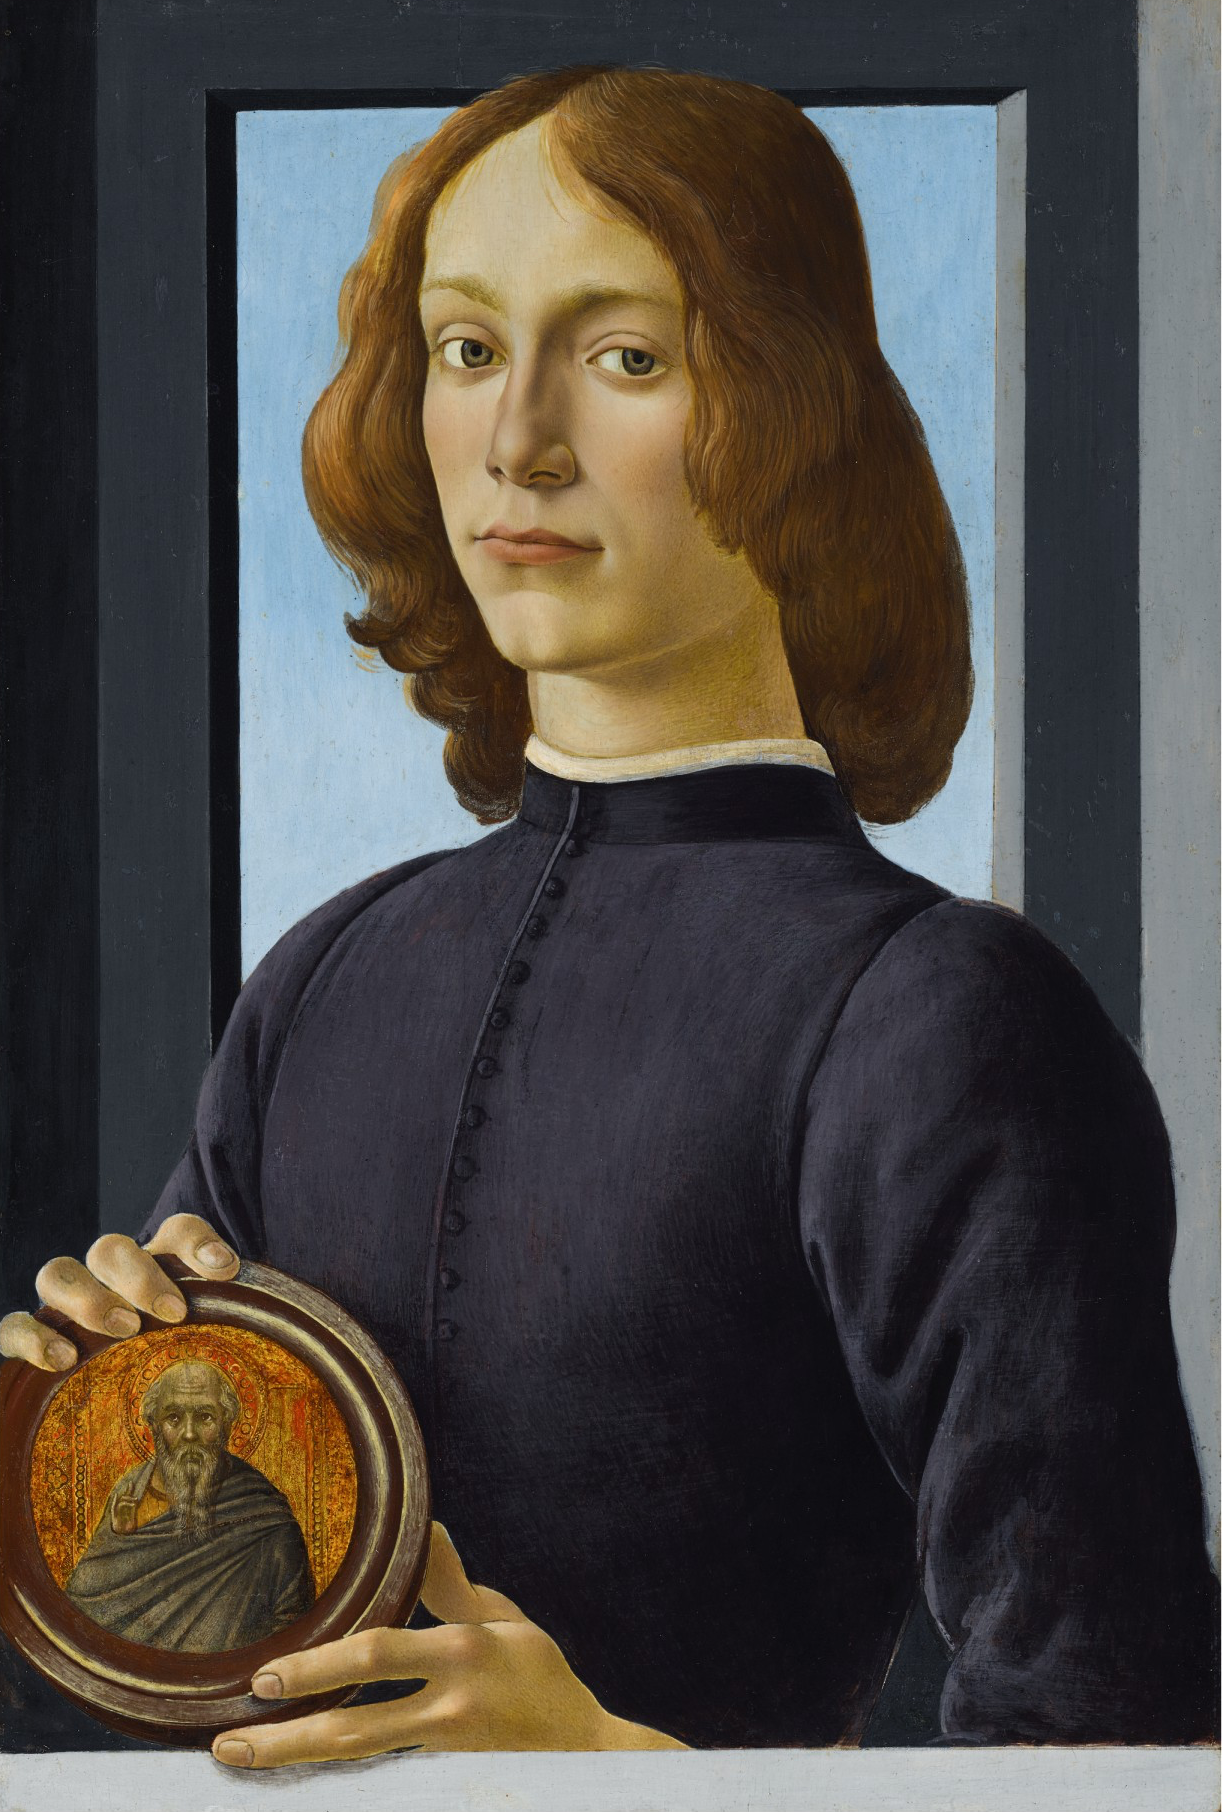 Ritratto di giovane uomo con in mano un medaglione by Sandro Botticelli - 1470-1480 circa - 58,4 x 39,4 cm collezione privata